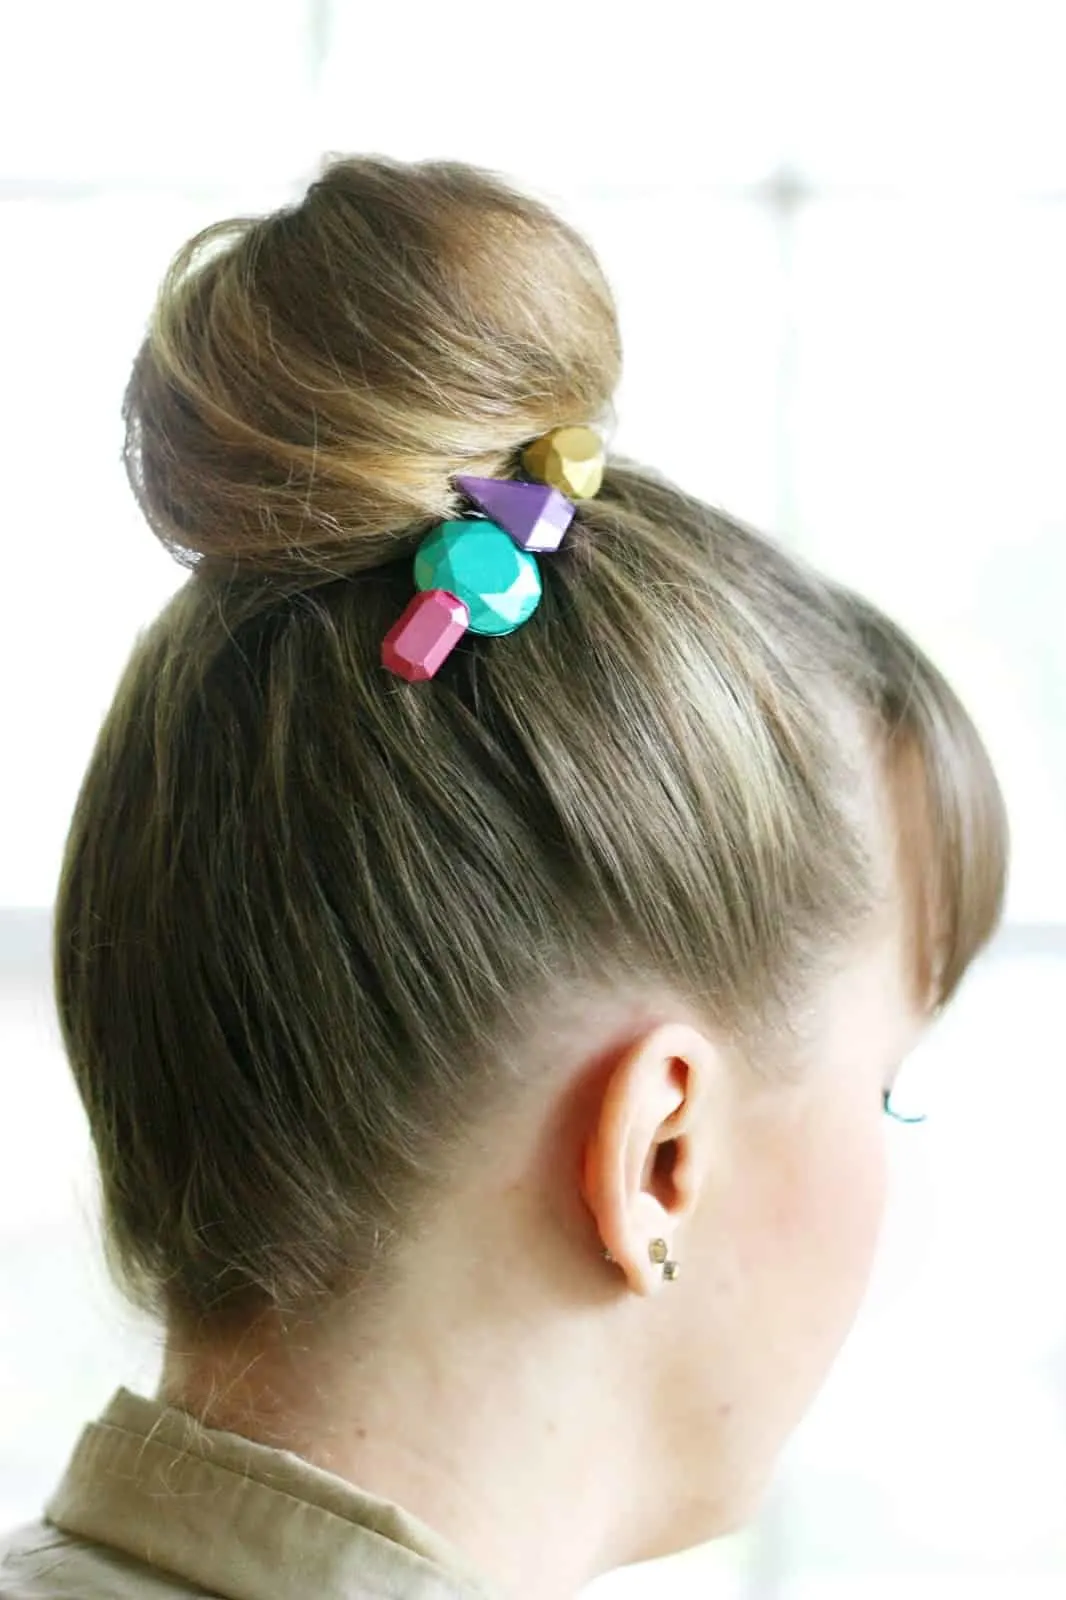 DIY metallic hair accessories in a woman's hair